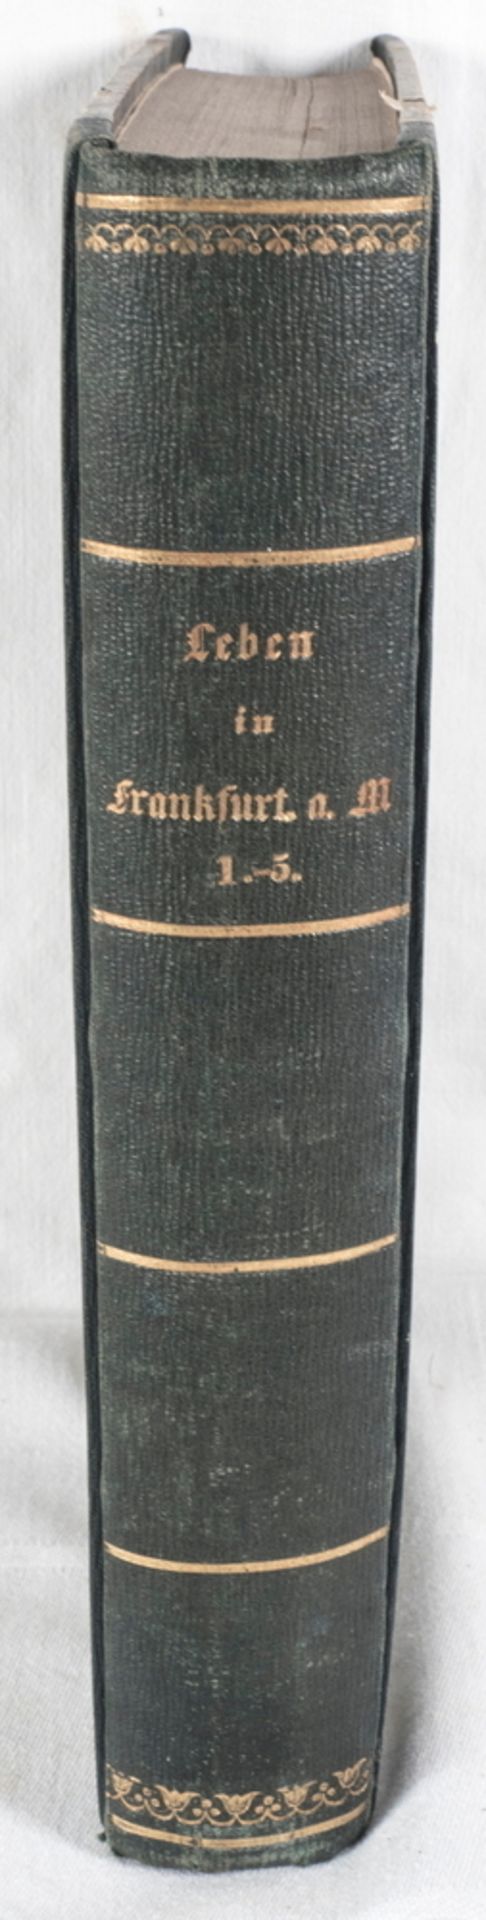 Maria Belli, "Leben in Frankfurt am Main", Auszüge der Frag - und Anzeigungsnachrichten (des